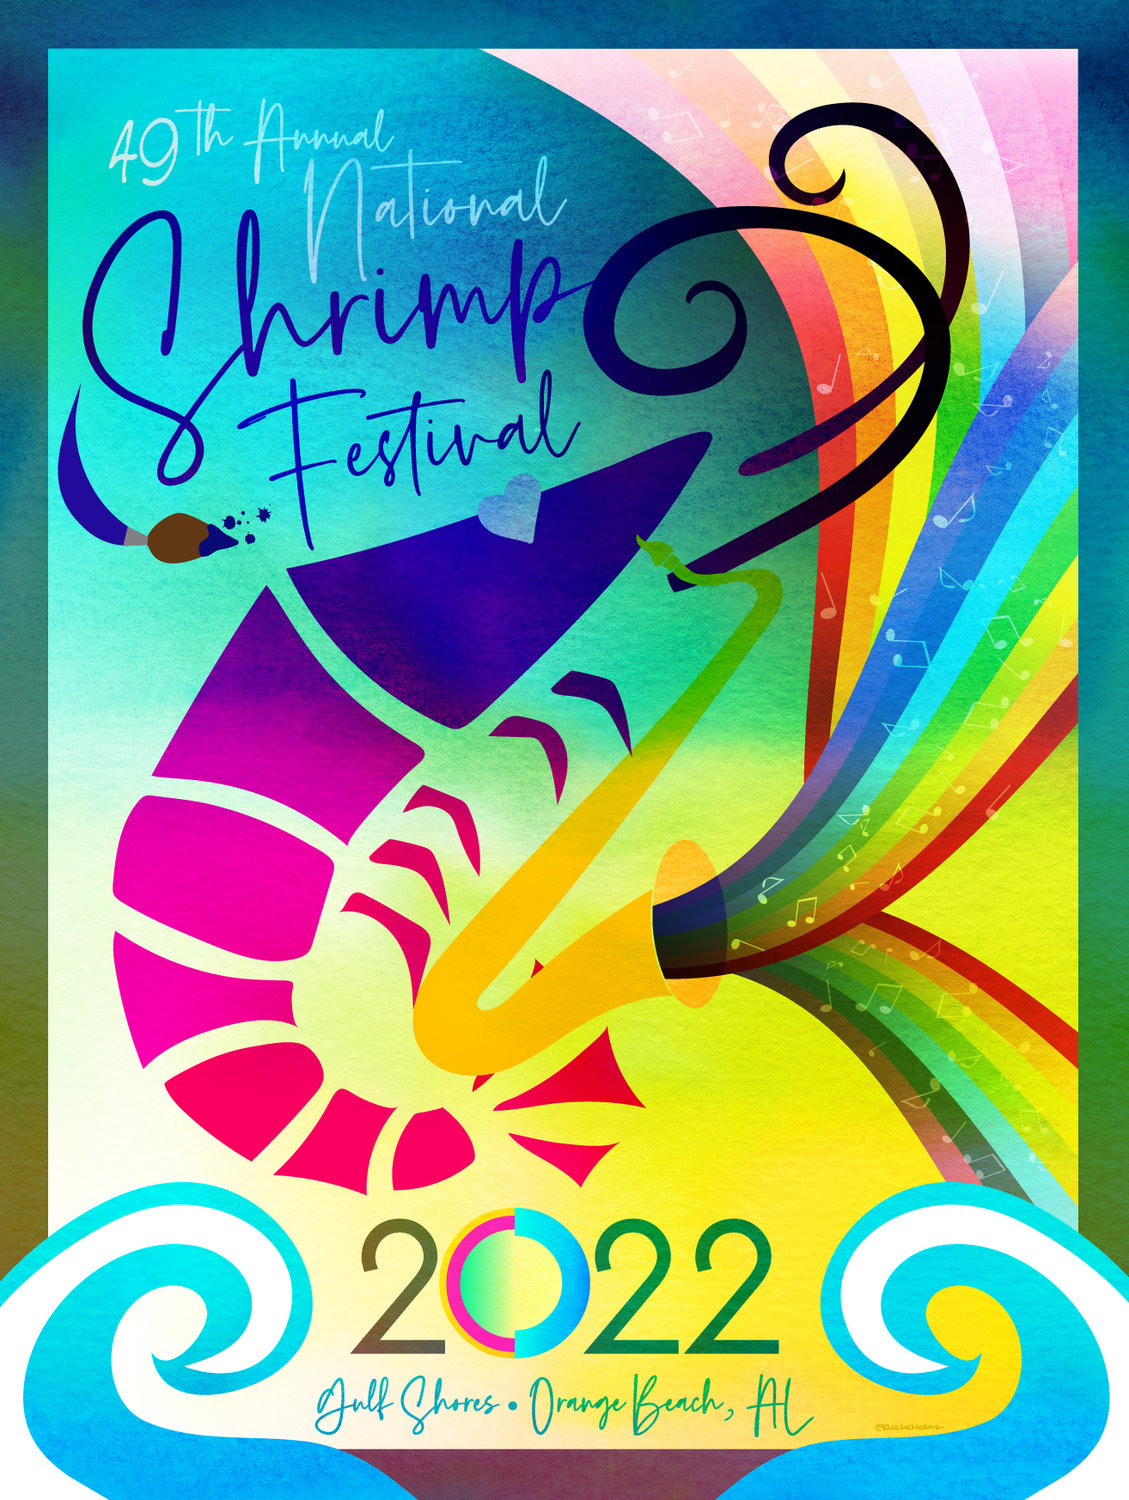 Gulf Coast Media | National Shrimp Festival announces musical lineup